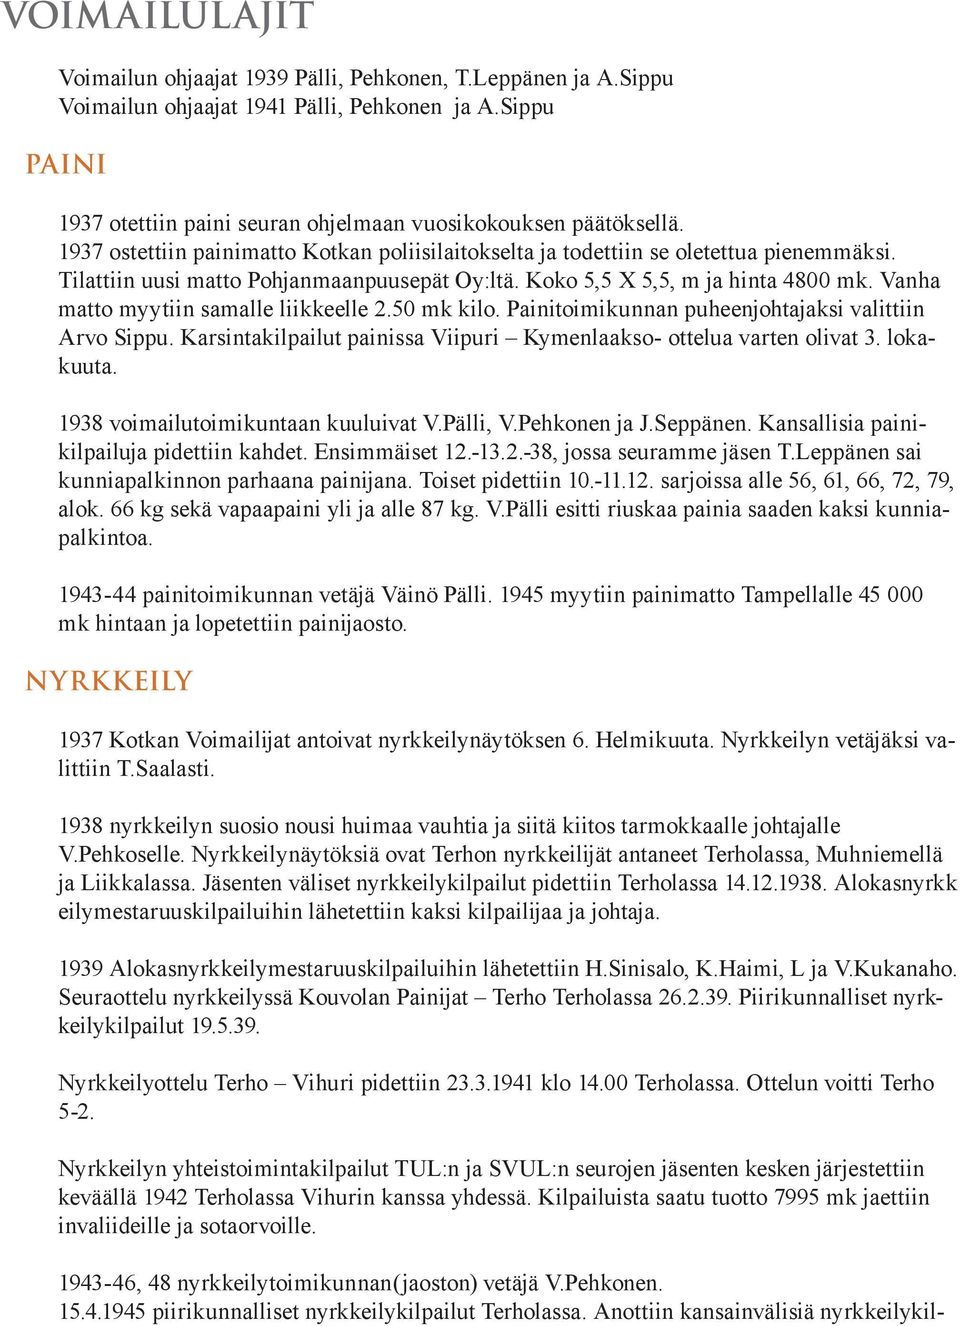 Vanha matto myytiin samalle liikkeelle 2.50 mk kilo. Painitoimikunnan puheenjohtajaksi valittiin Arvo Sippu. Karsintakilpailut painissa Viipuri Kymenlaakso- ottelua varten olivat 3. lokakuuta.